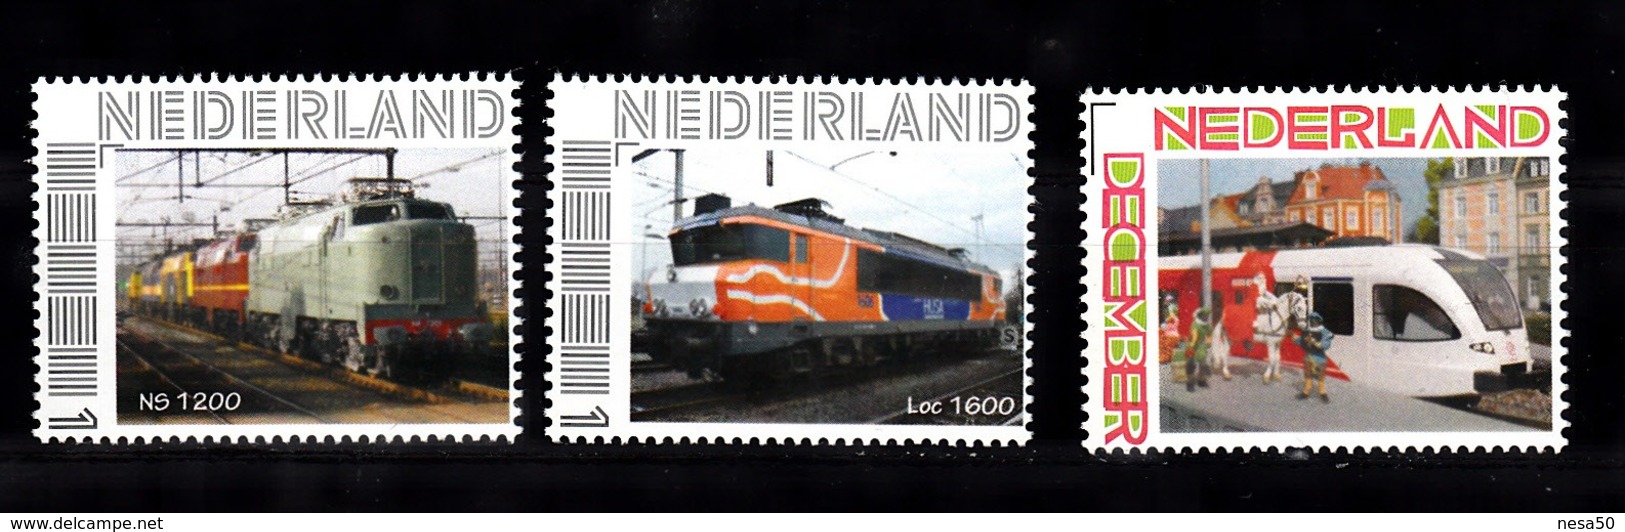 Trein, Train, Locomotive, Eisenbahn  Nederland : NS1200 + LOc 1600 + Sinterklaas Bij Veolia - Treinen